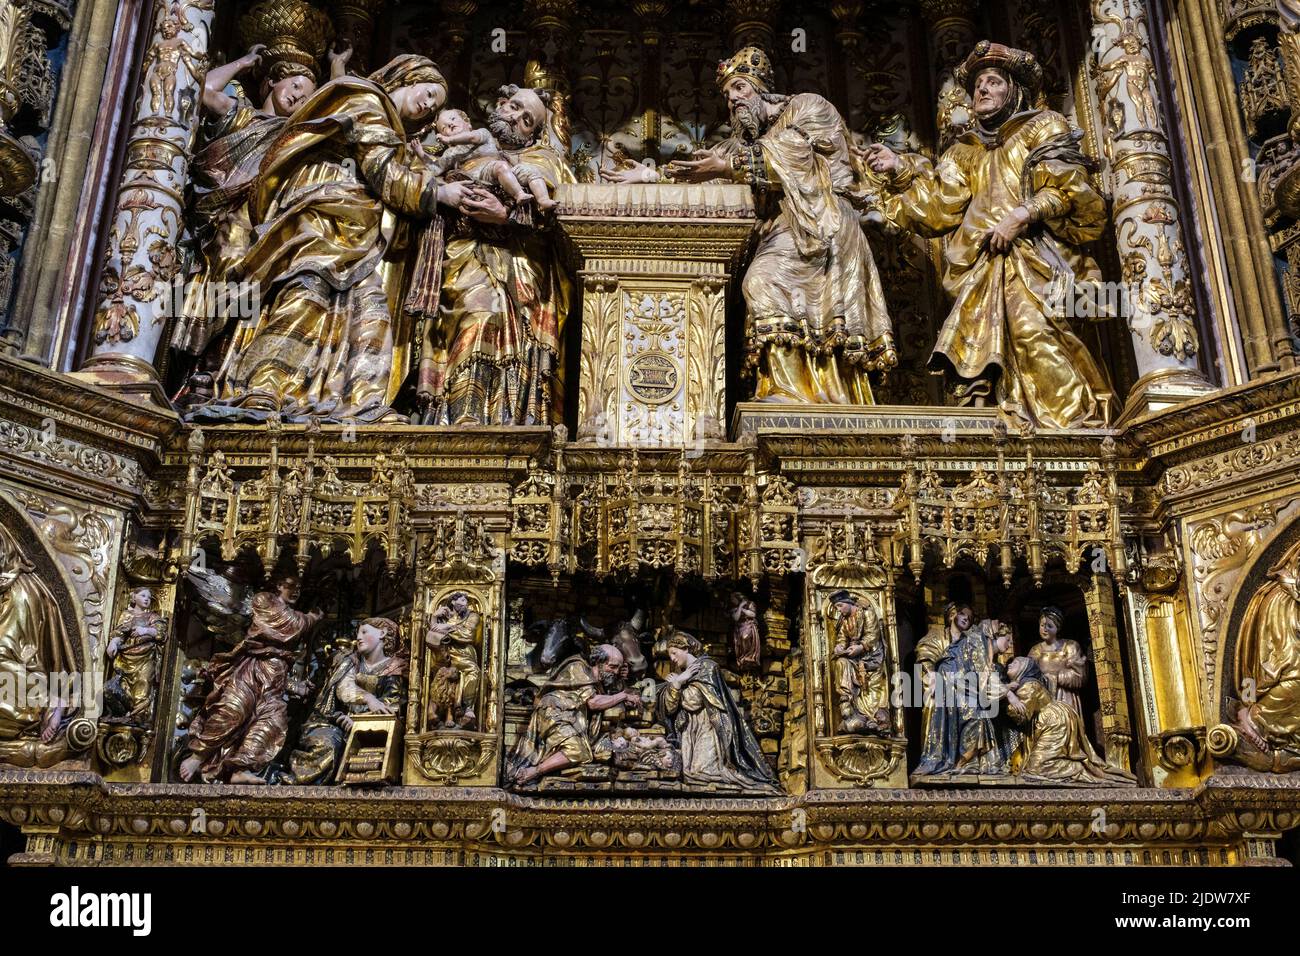 Espagne, Burgos. Cathédrale de Santa Maria, site classé au patrimoine mondial. Détail de l'retable dans le Capilla de los Condestables. Banque D'Images